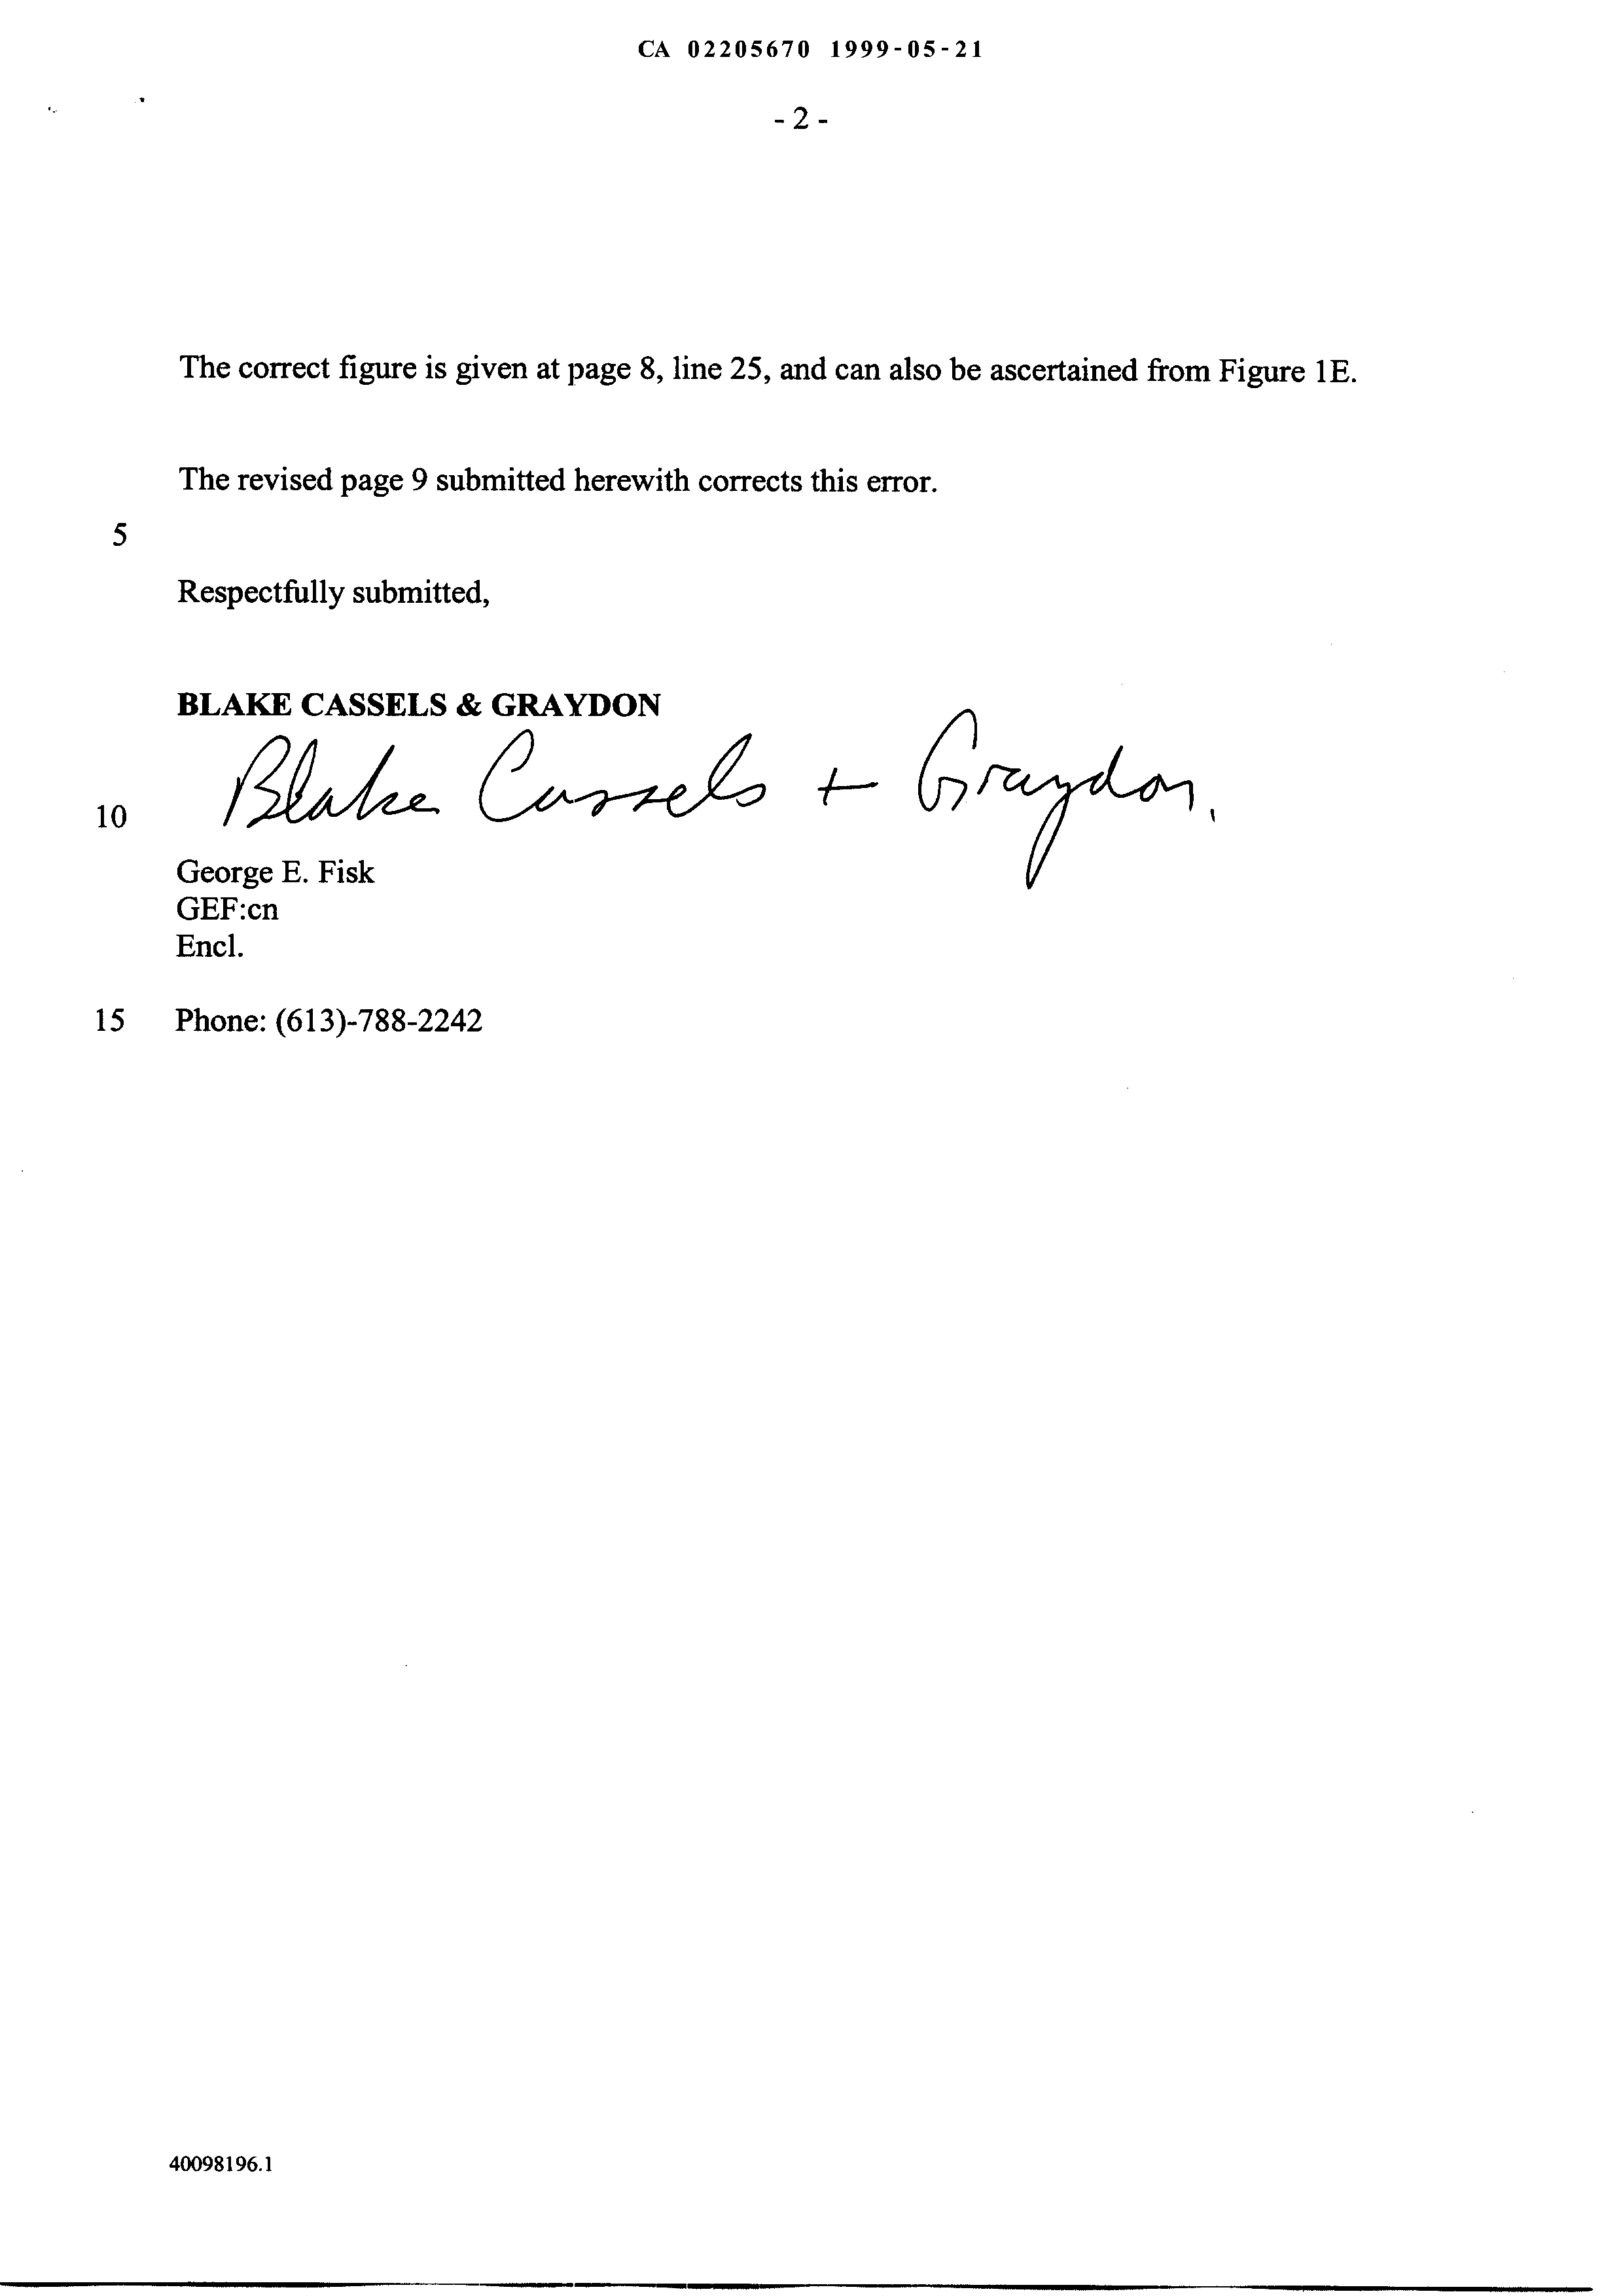 Document de brevet canadien 2205670. Poursuite-Amendment 19981221. Image 2 de 3